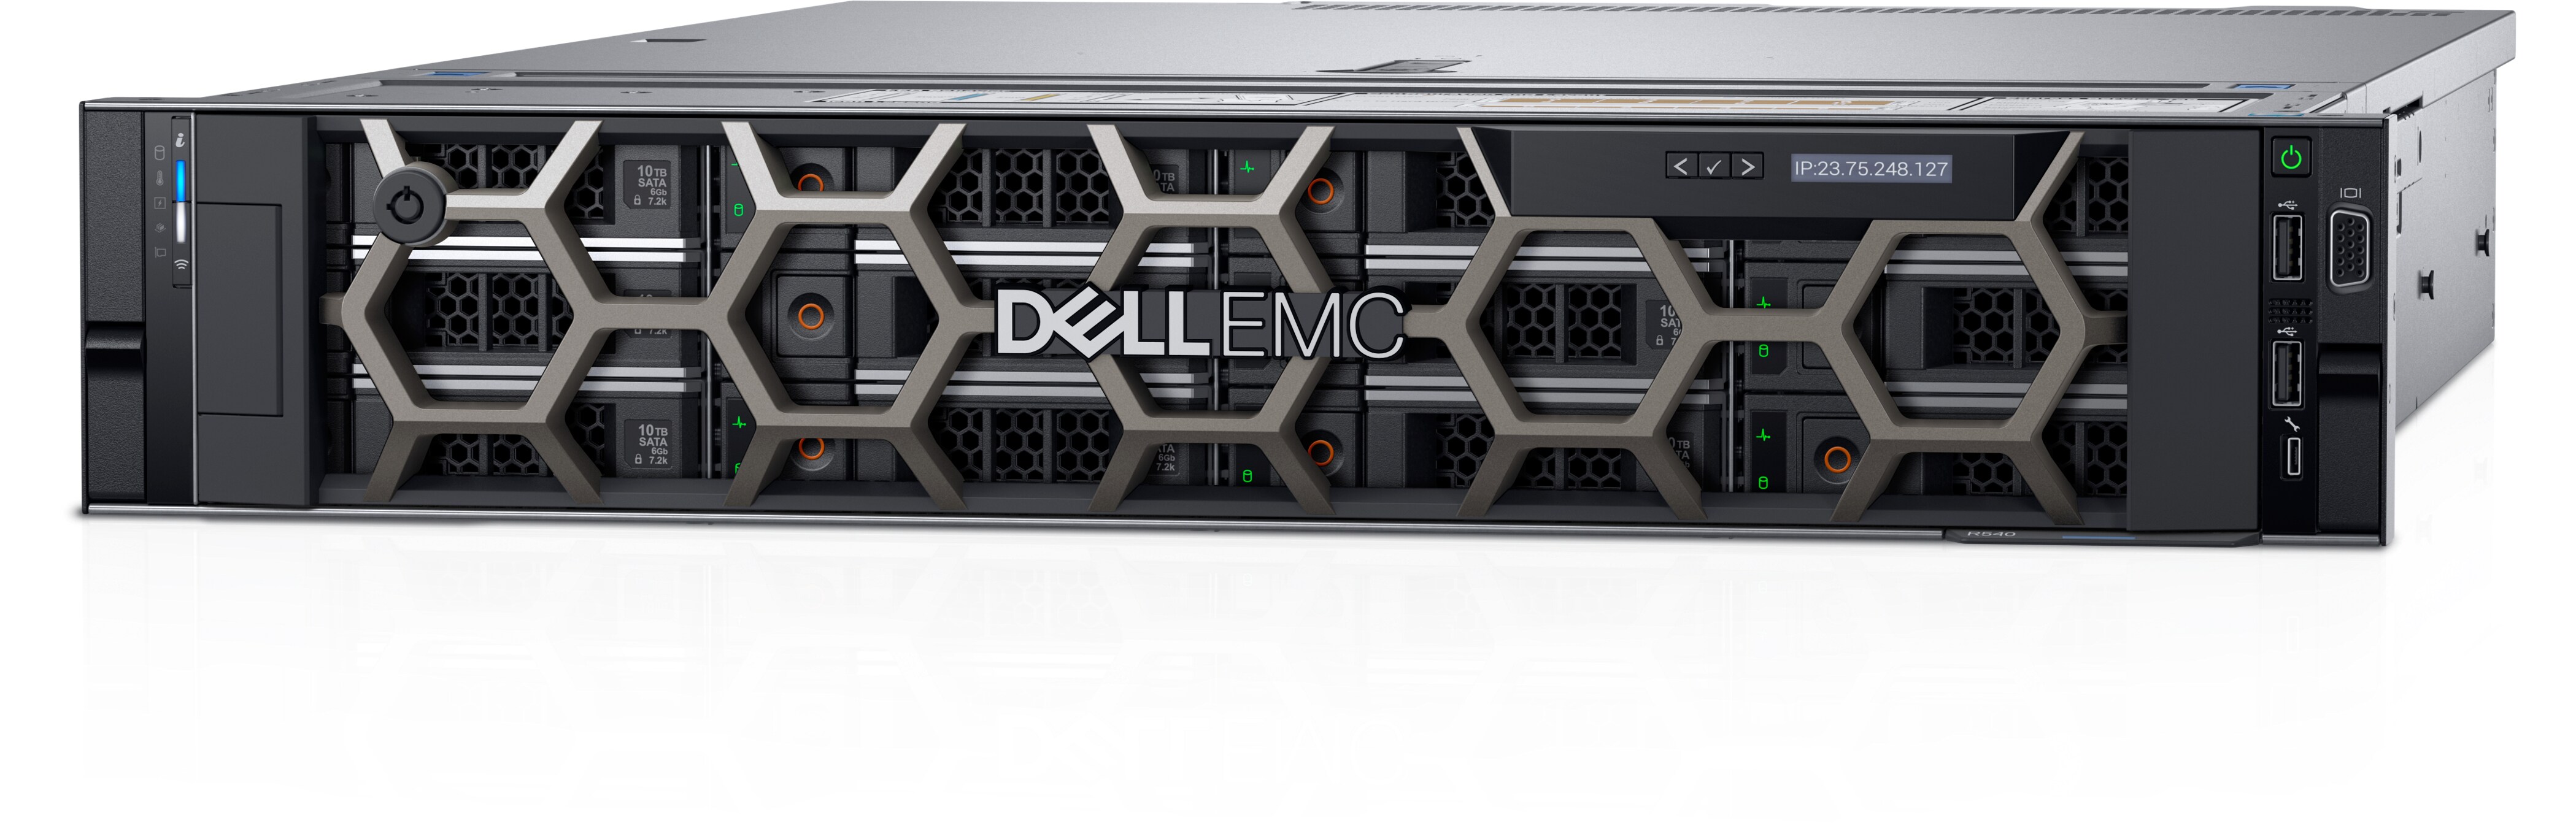 Dell(TM) PowerEdge(TM) R540 Rack Mount Server